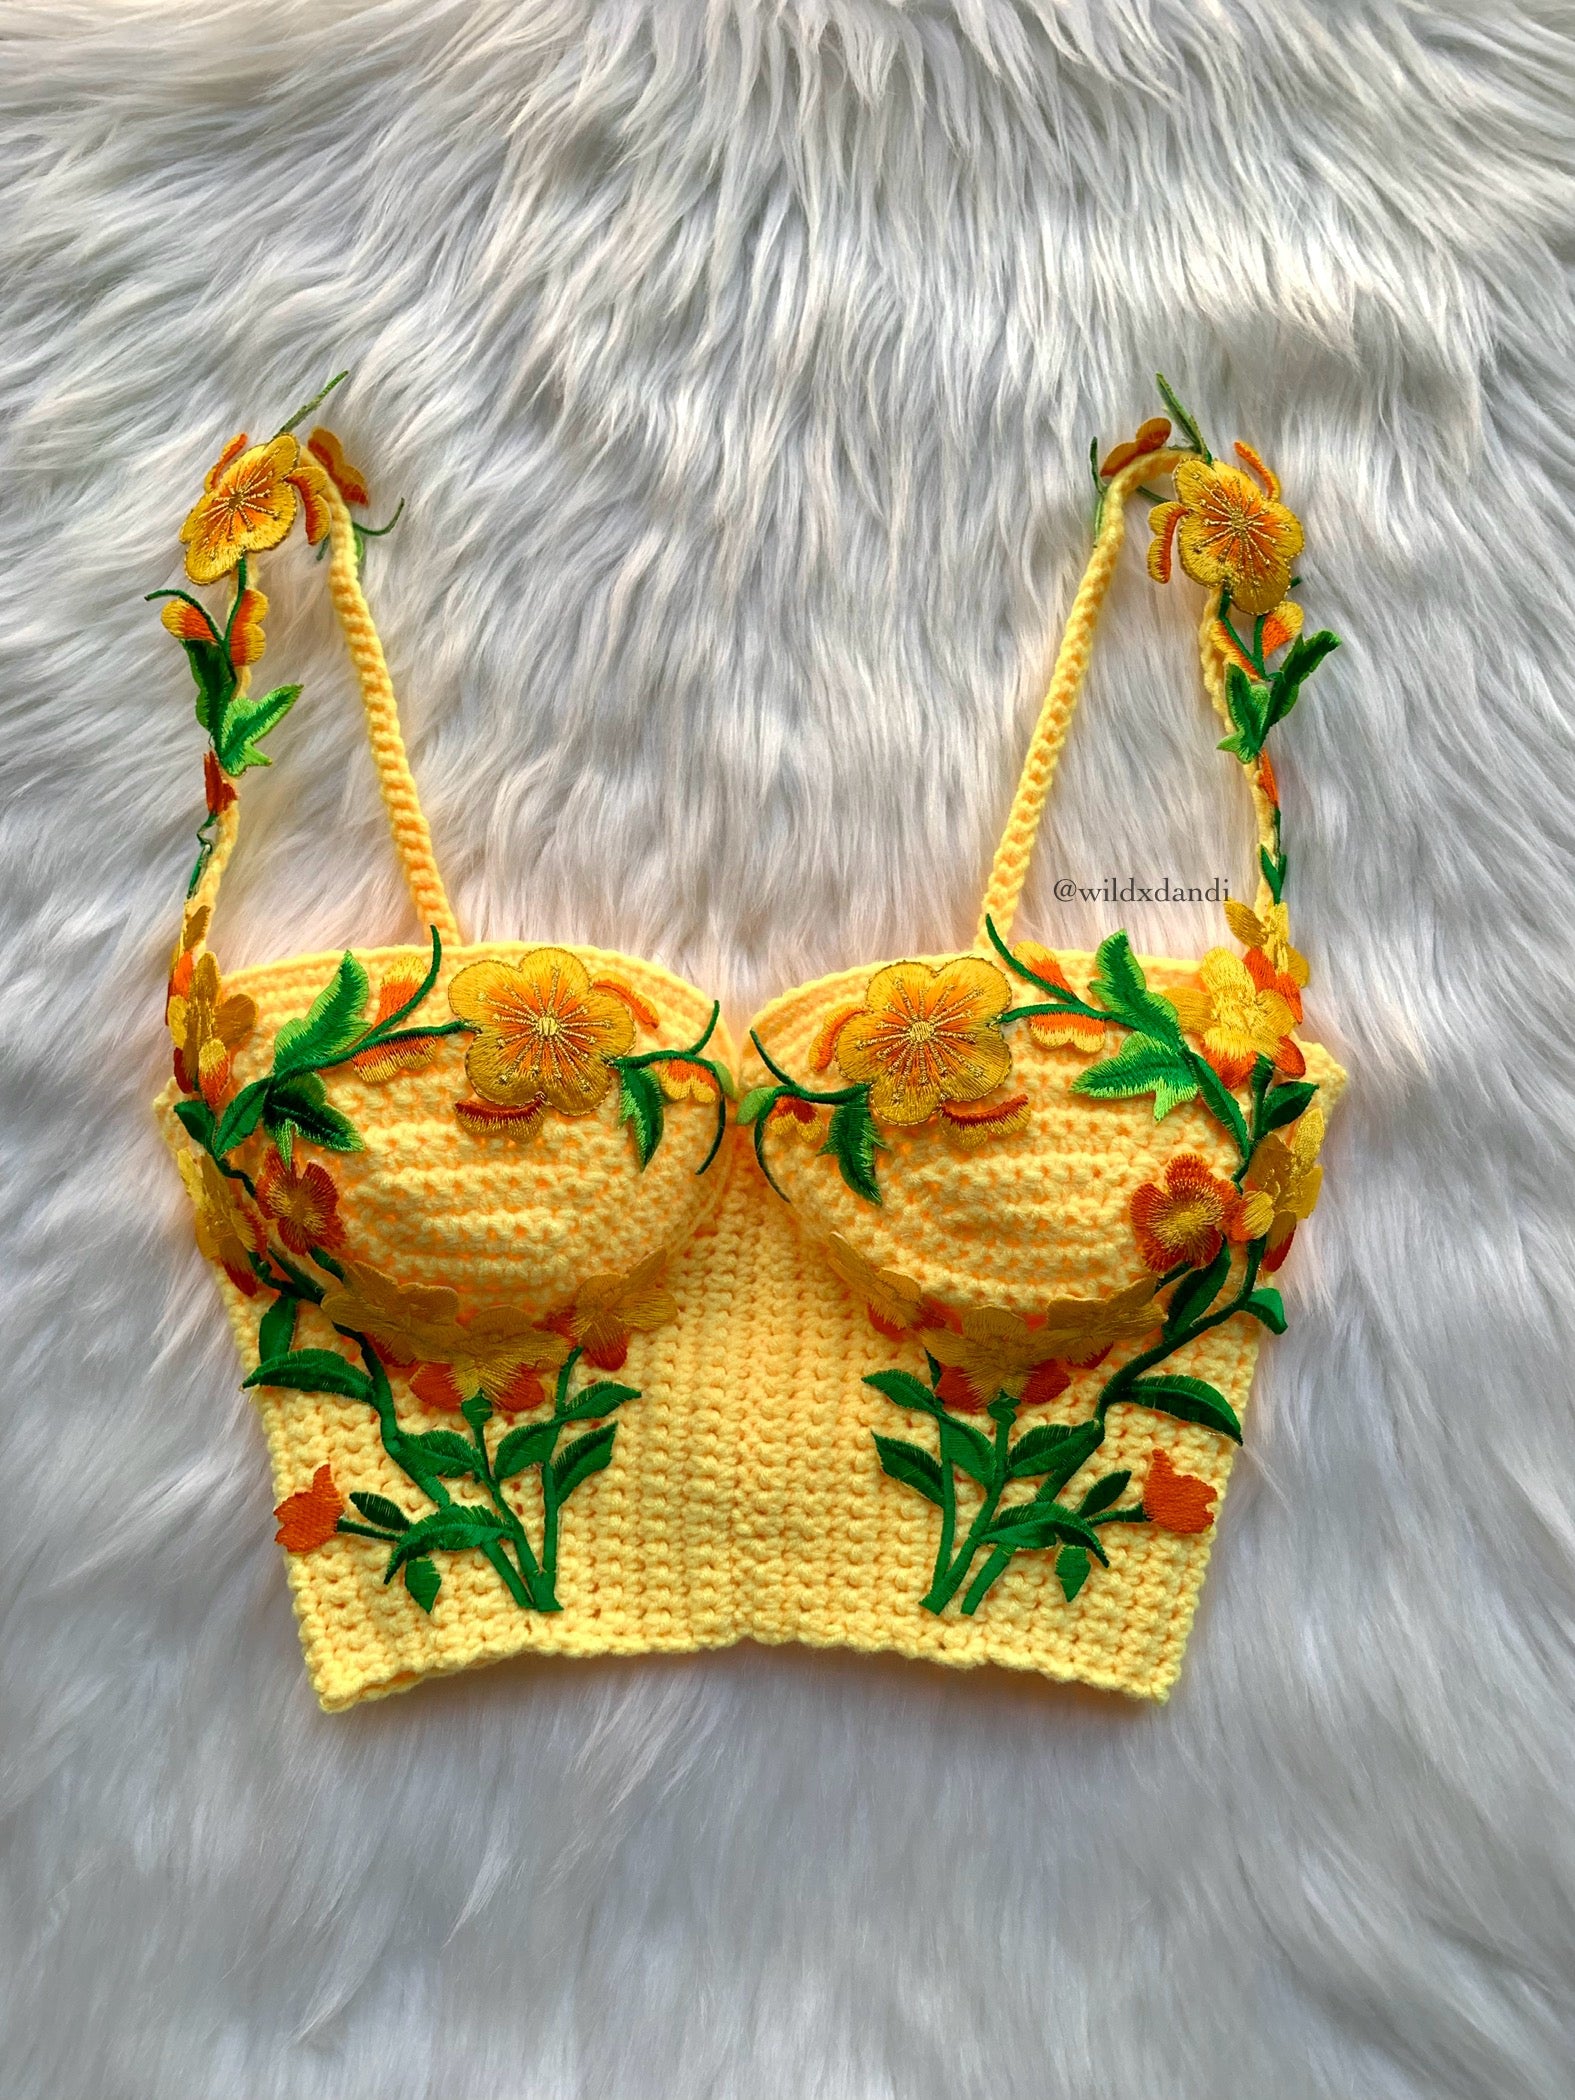 WildxDandi's Handmade Crochet Designs